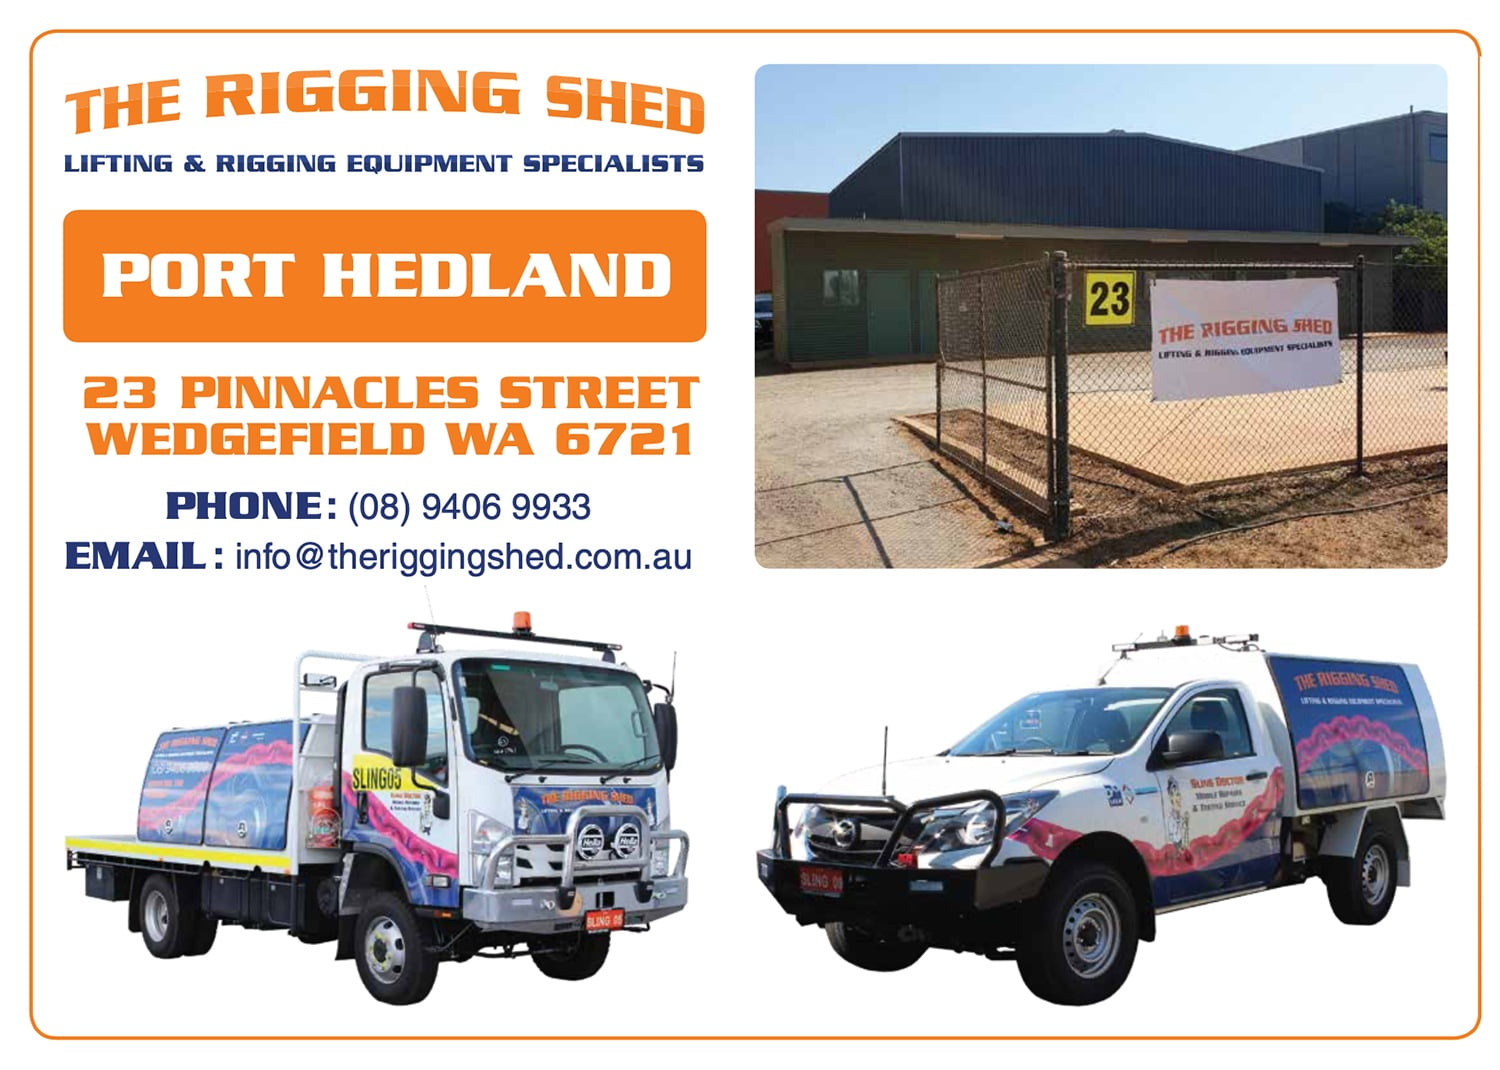 Port Hedland Rigging Shed